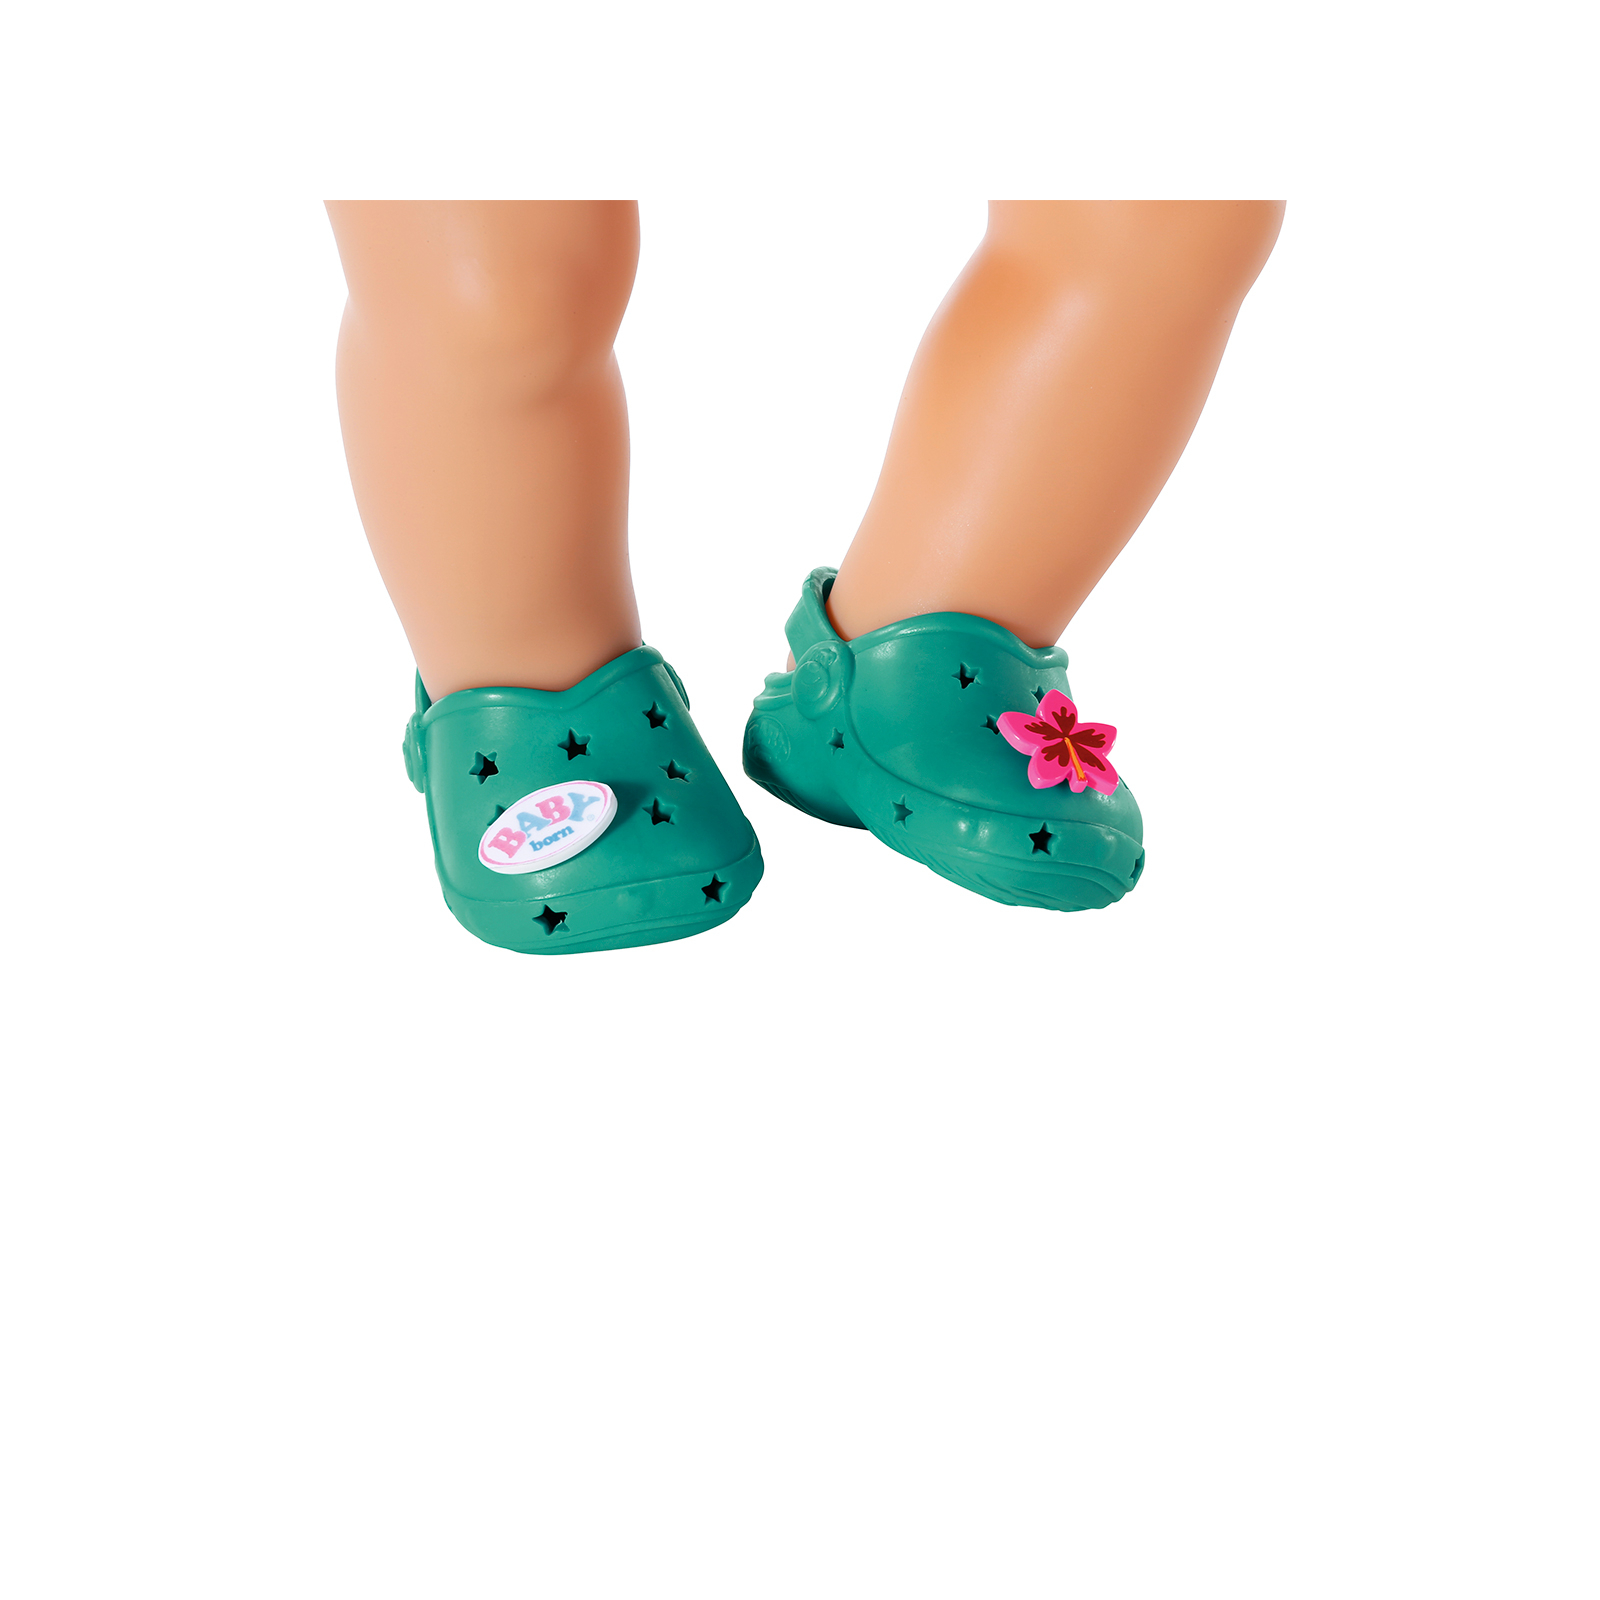 Аксессуар к кукле Zapf Обувь для куклы Baby Born - Cандалии с значками (зеленые) (831809-1) изображение 2